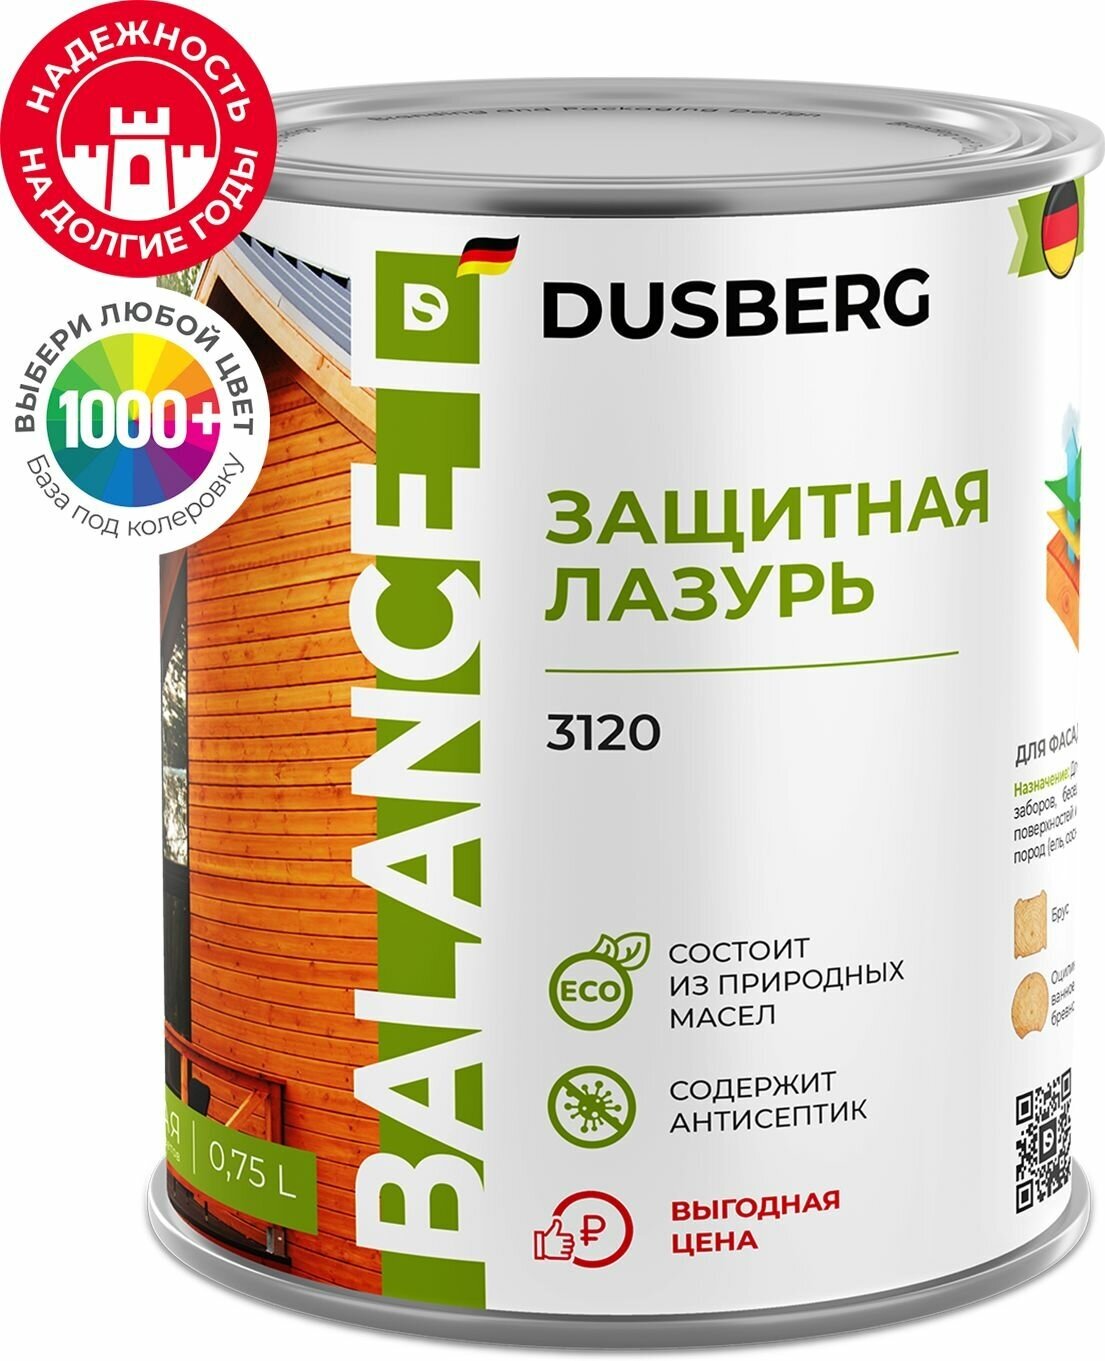 Защитная лазурь Dusberg Balance 0,75 л шелковисто-глянцевая бесцветная